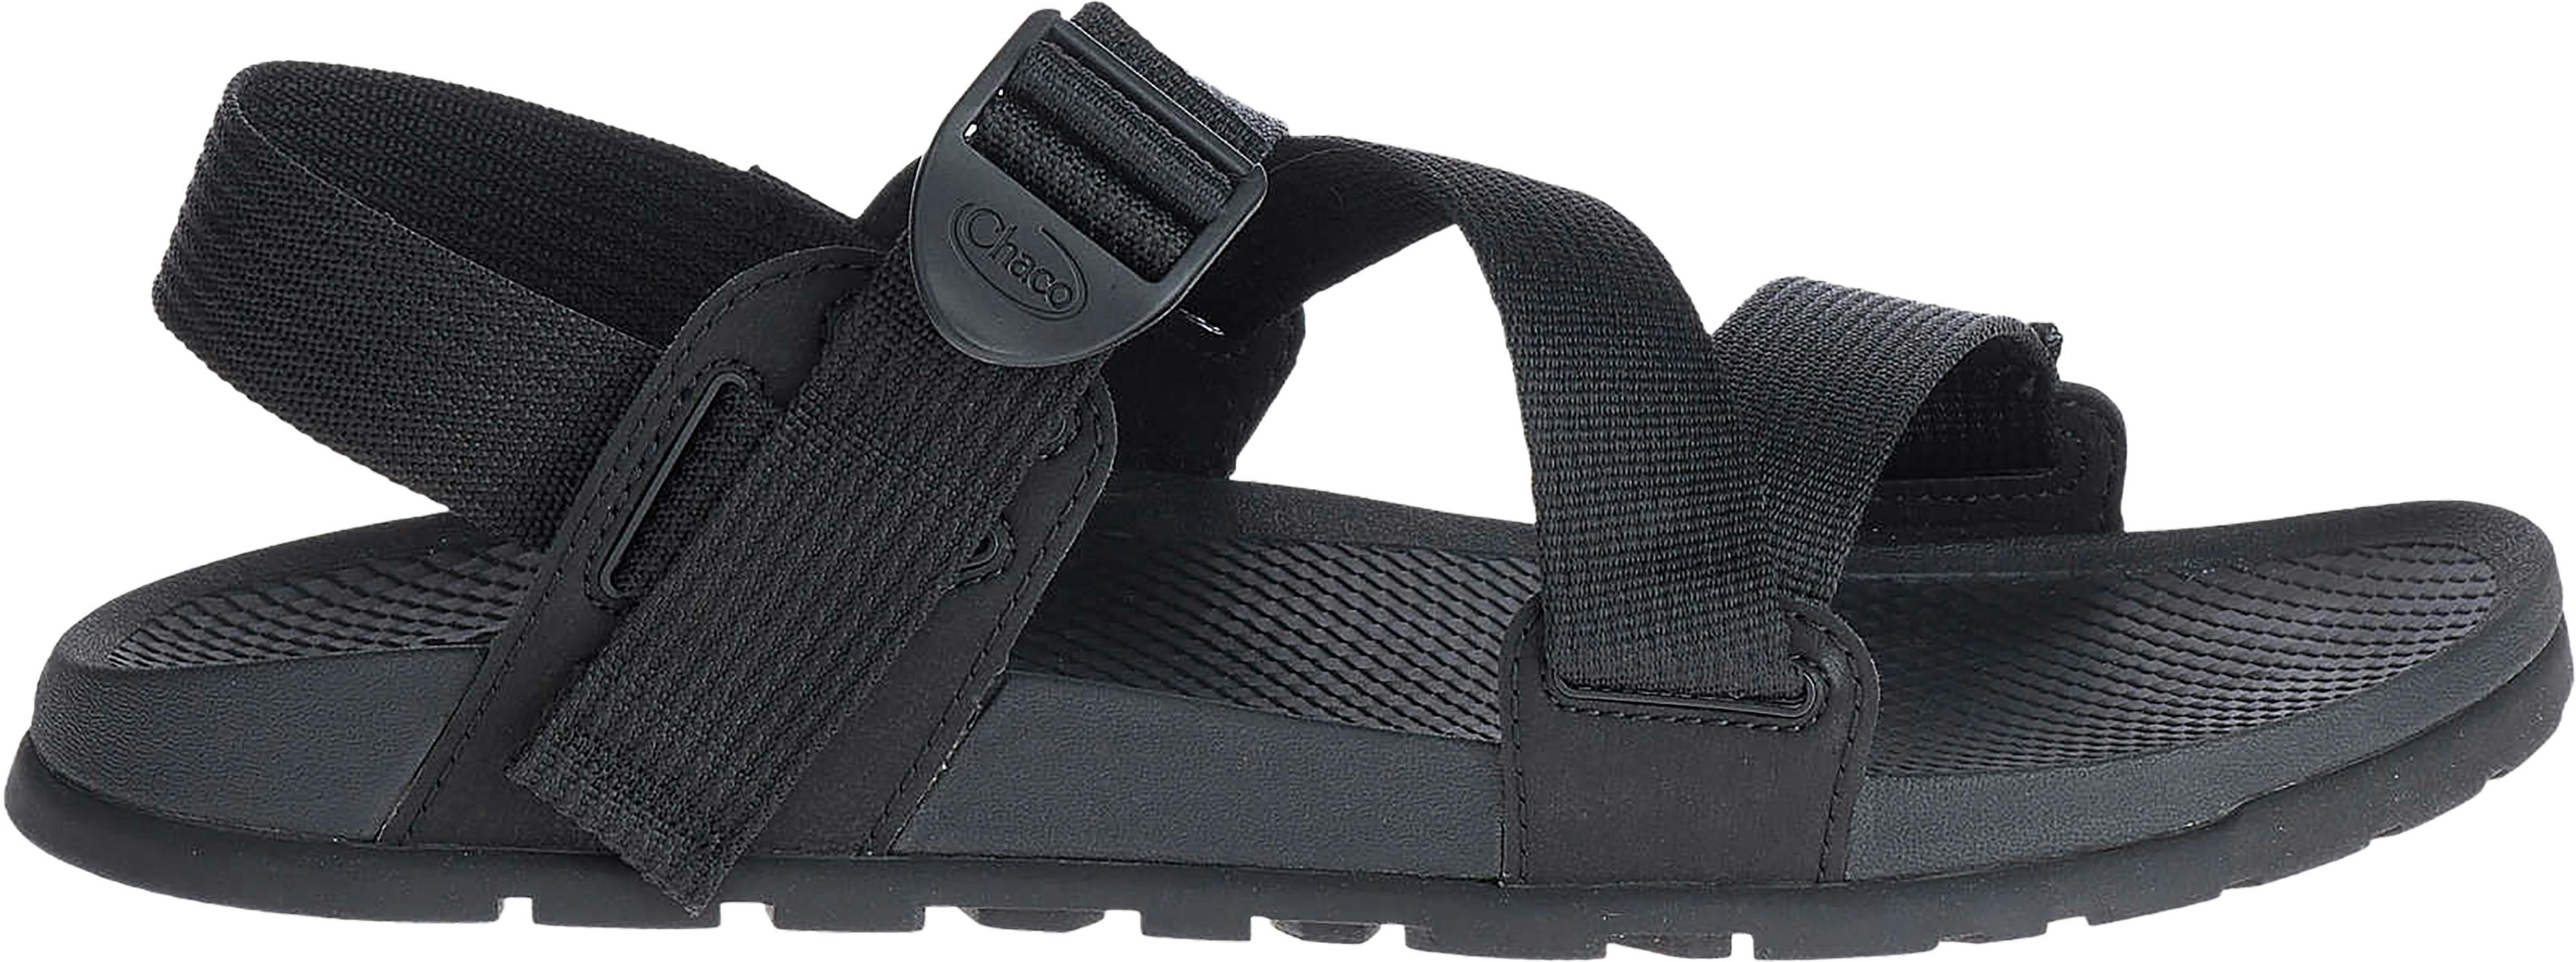 Product image for Lowdown Sandal - Men's